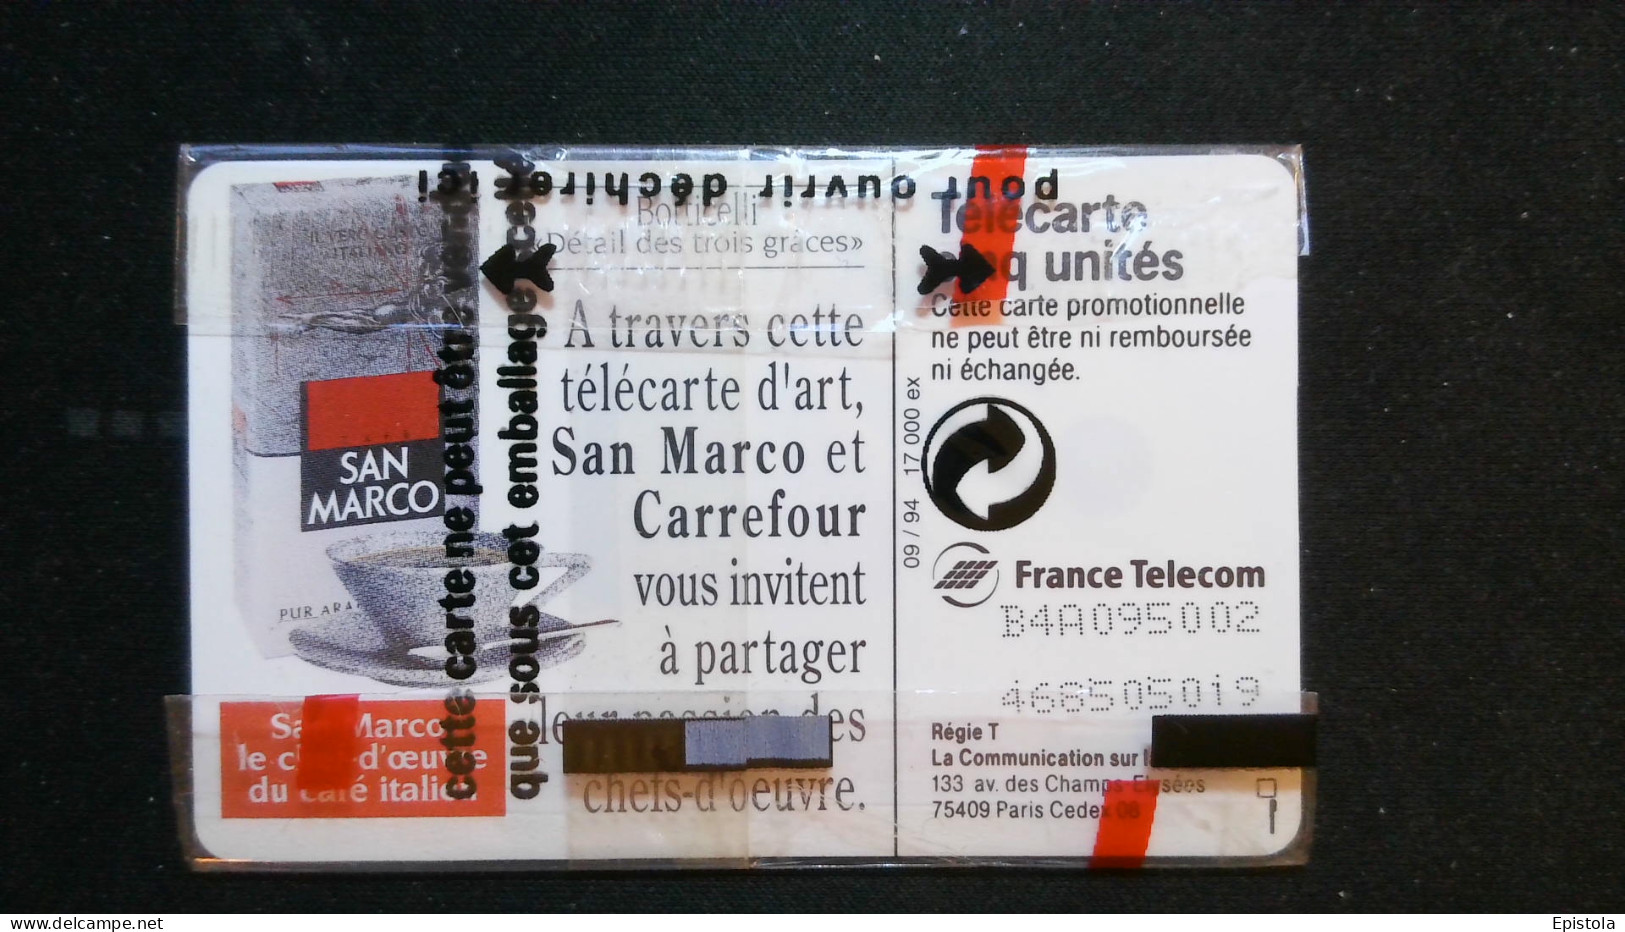 ► Café SAN MARCO   Oeuvre BOTTICELLI  - Télécarte Neuve Sous Blister    5U  -   17 000 Ex - France Telecom - Painting